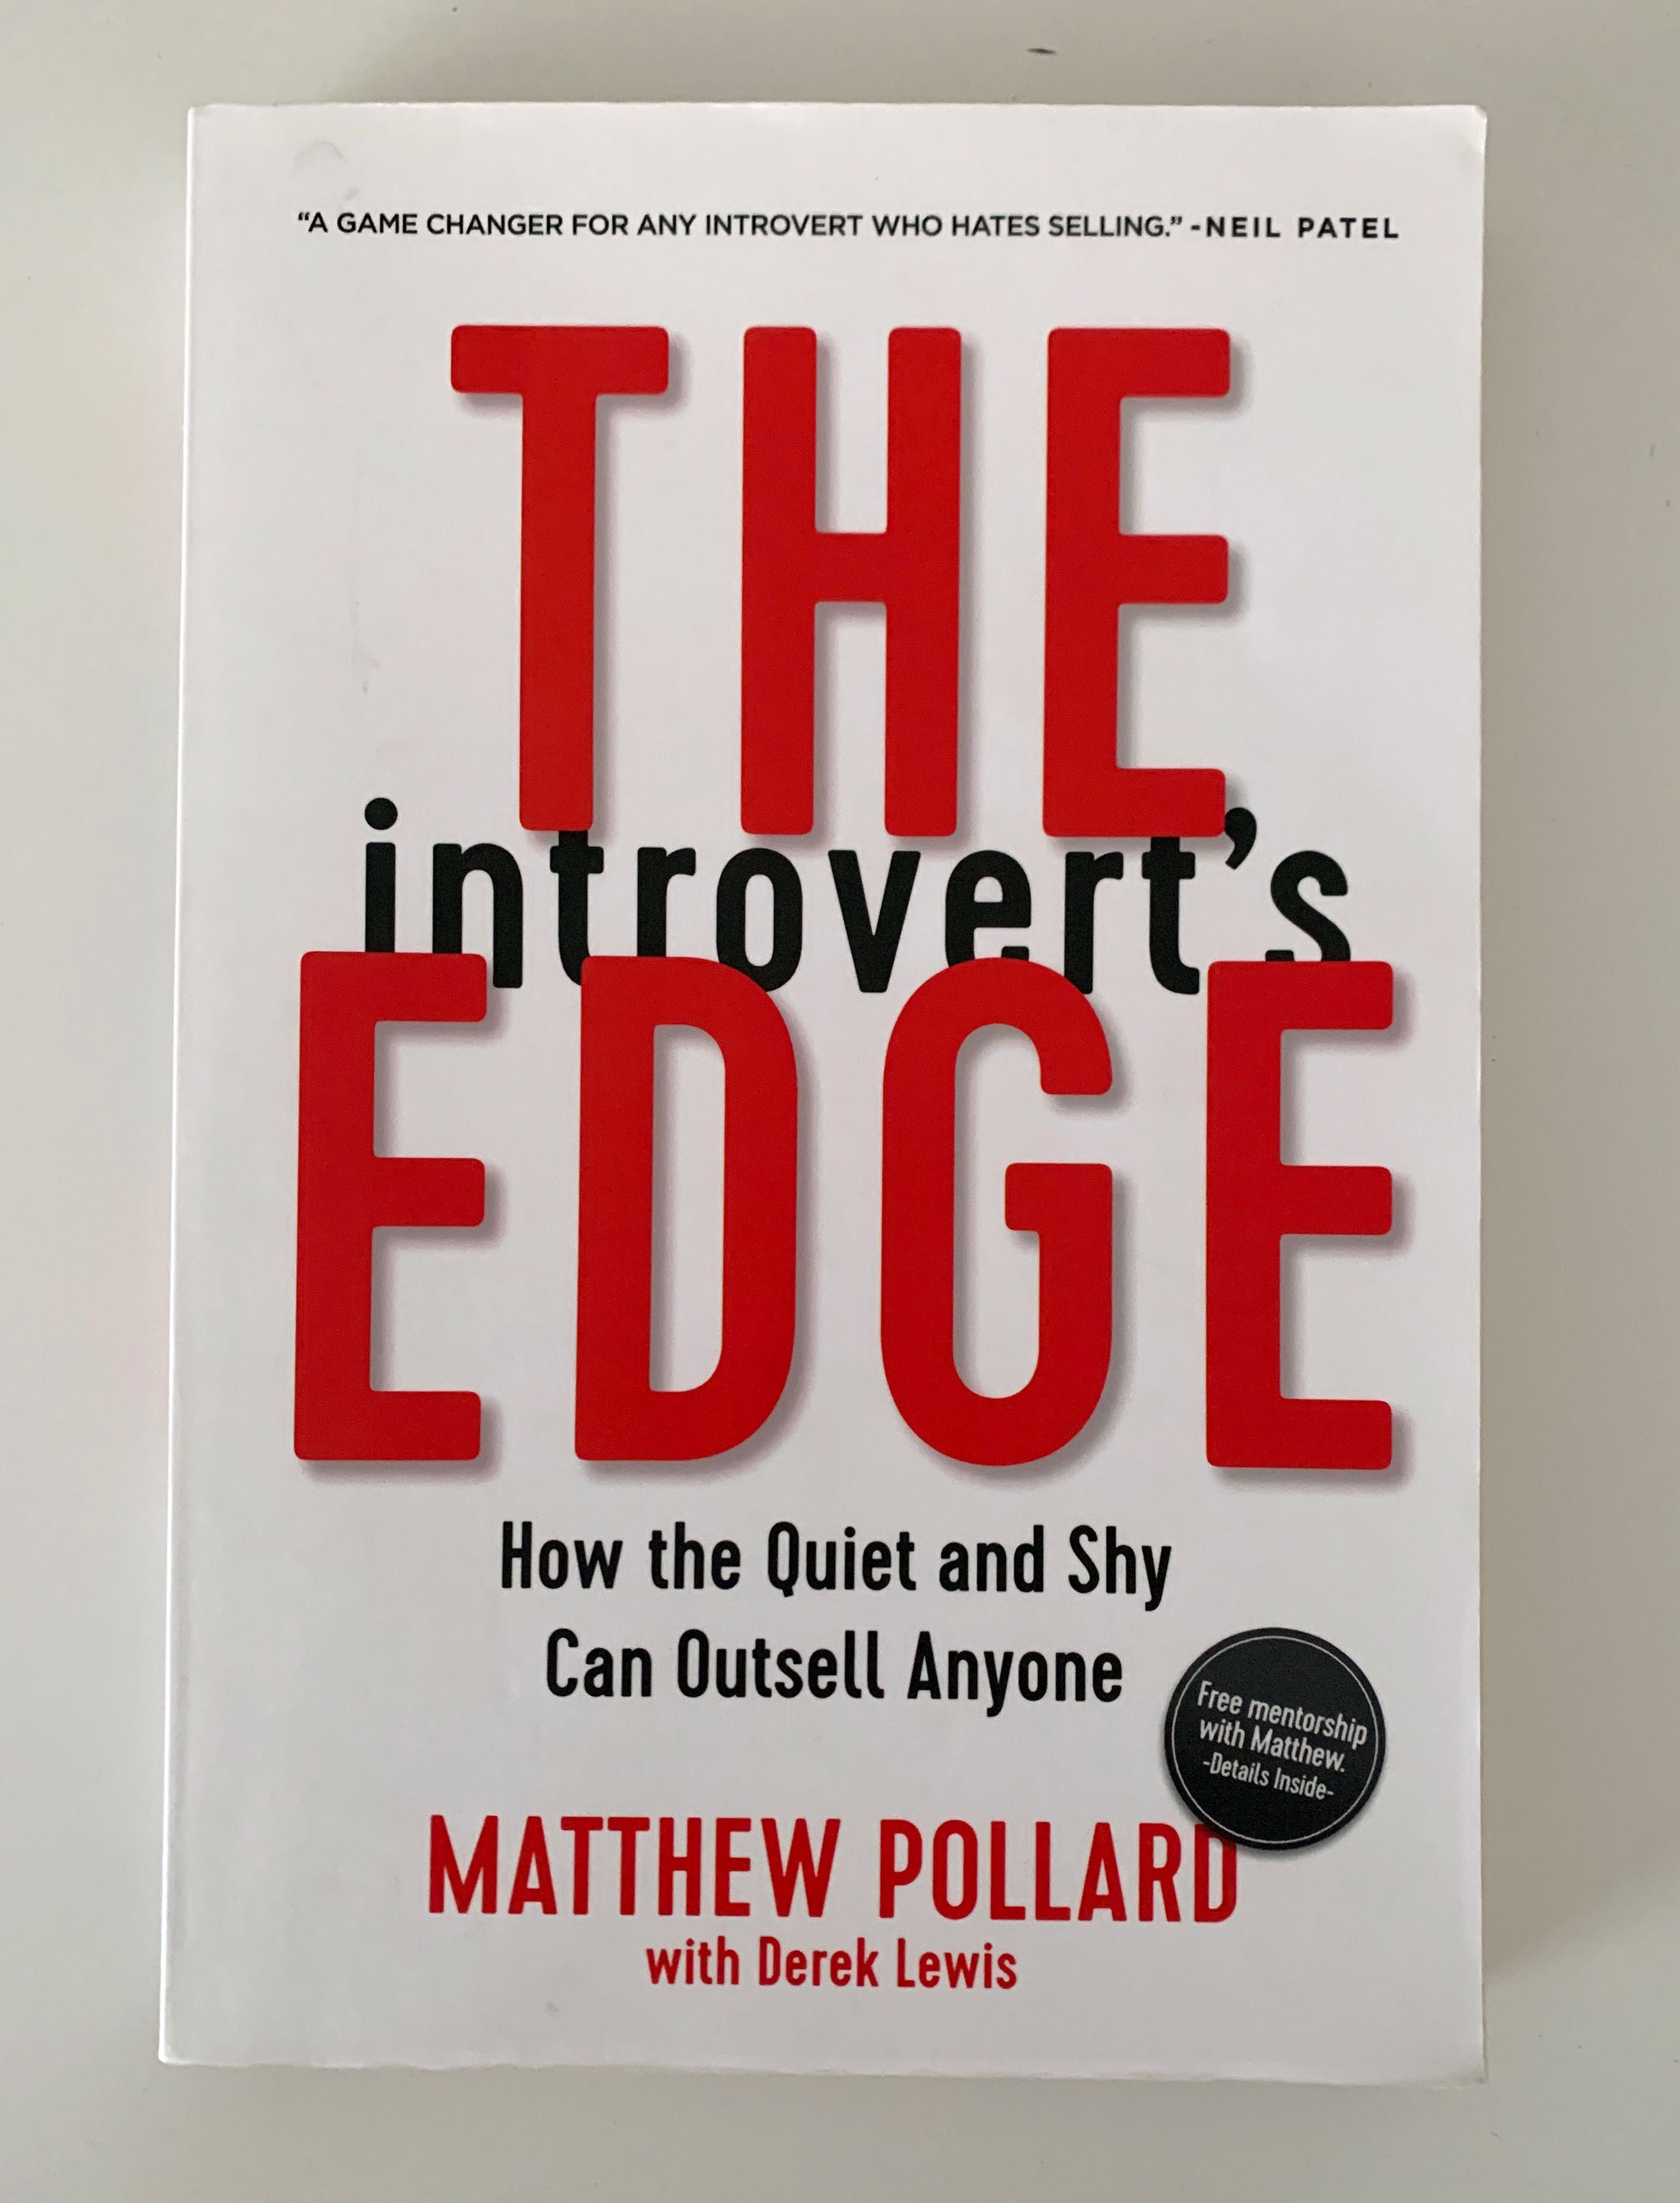 Livro "The Introvert's Edge"